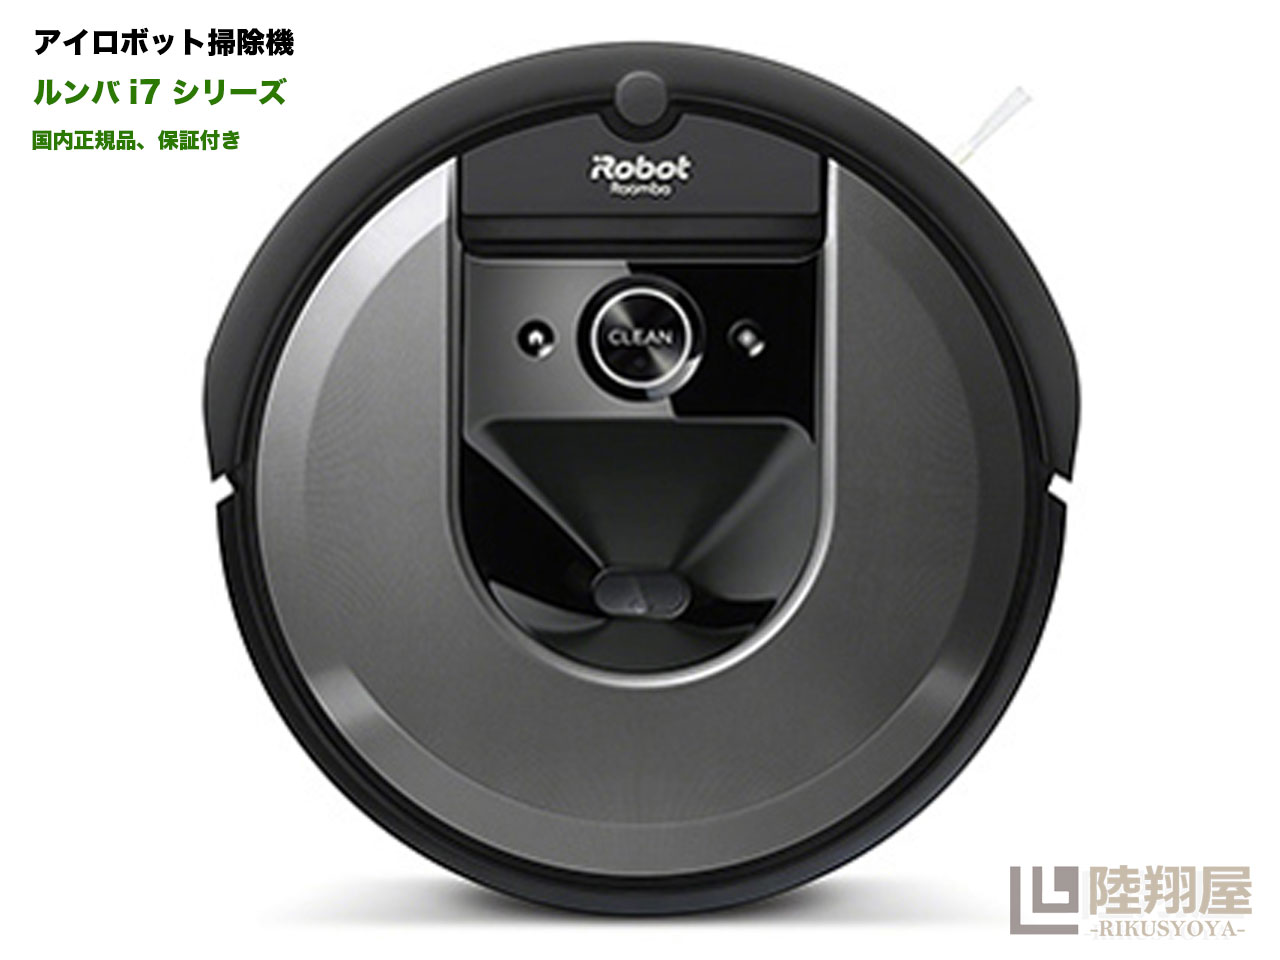 ルンバ ★新品★ルンバ i7 ロボット掃除機 アイロボット 水洗いできるダストボックス wifi対応 スマートマッピング 自動充電・運転再開 吸引力 カーペット 畳 i715060 Alexa対応